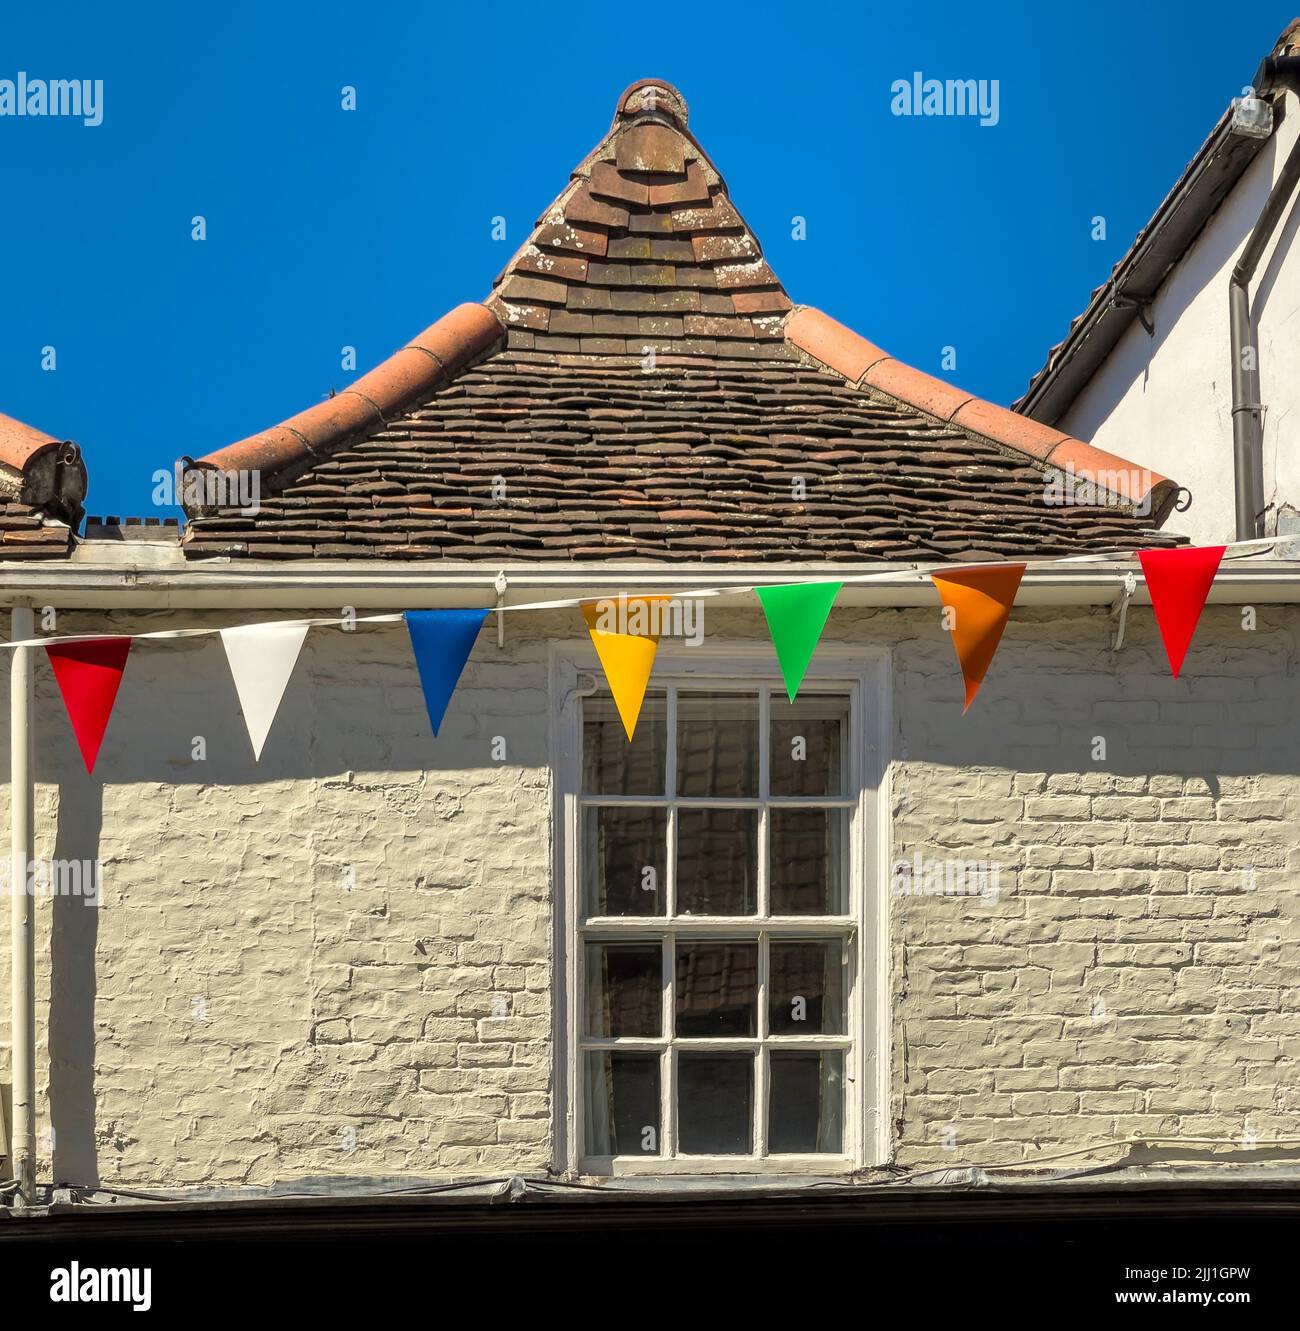 Antiguo tejado de azulejos en el centro de York con banderitas de colores, Reino Unido Foto de stock